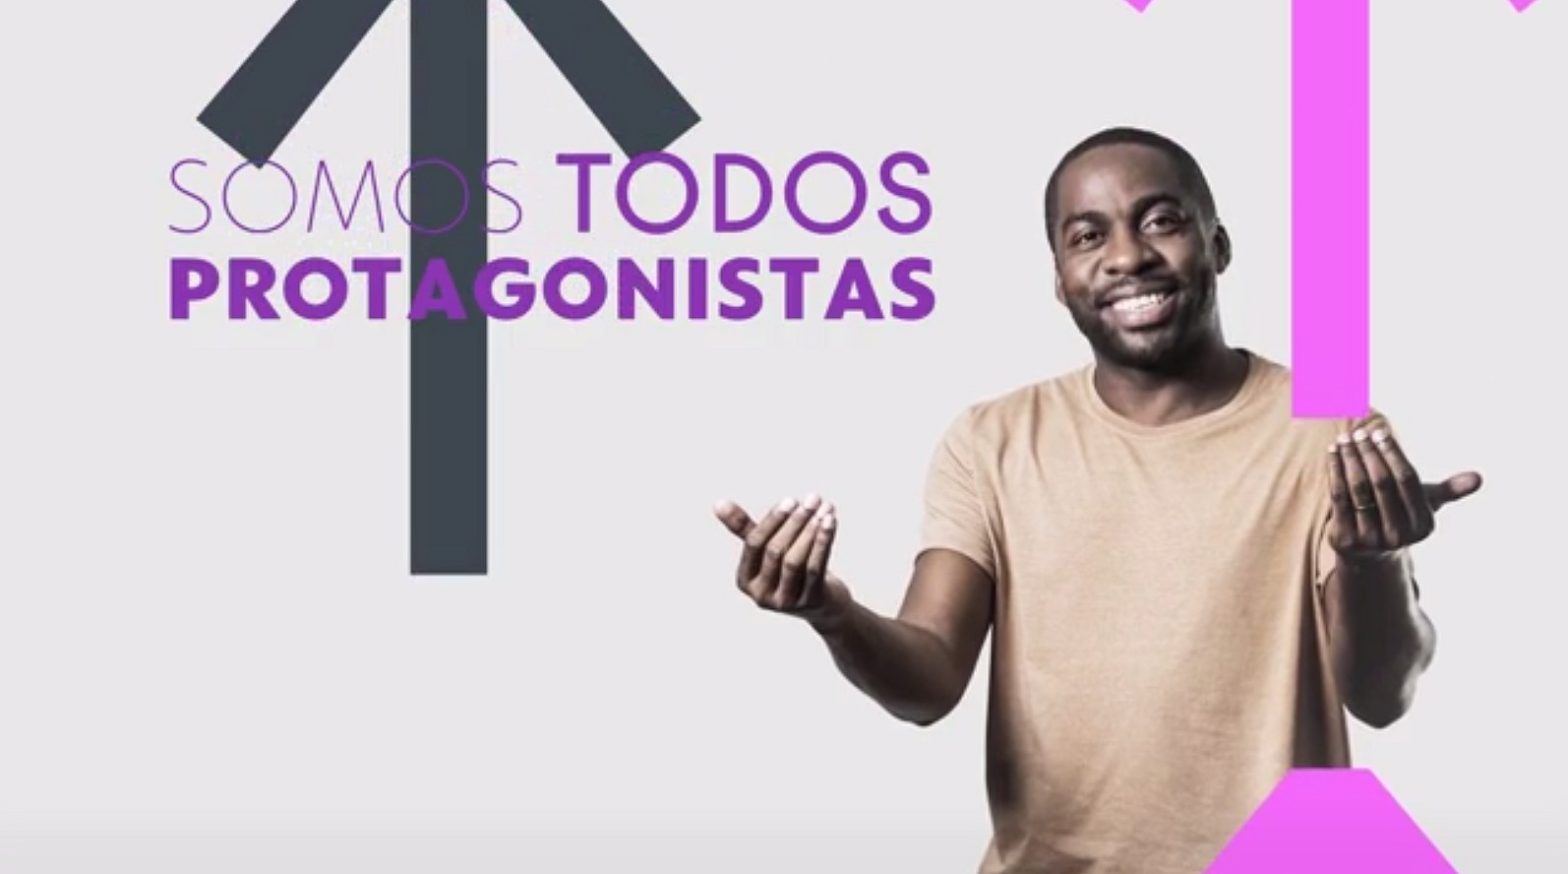 Globo vai levar criações feitas para a internet para a TV em projeto de experiência cultural colaborativa com Lázaro Ramos